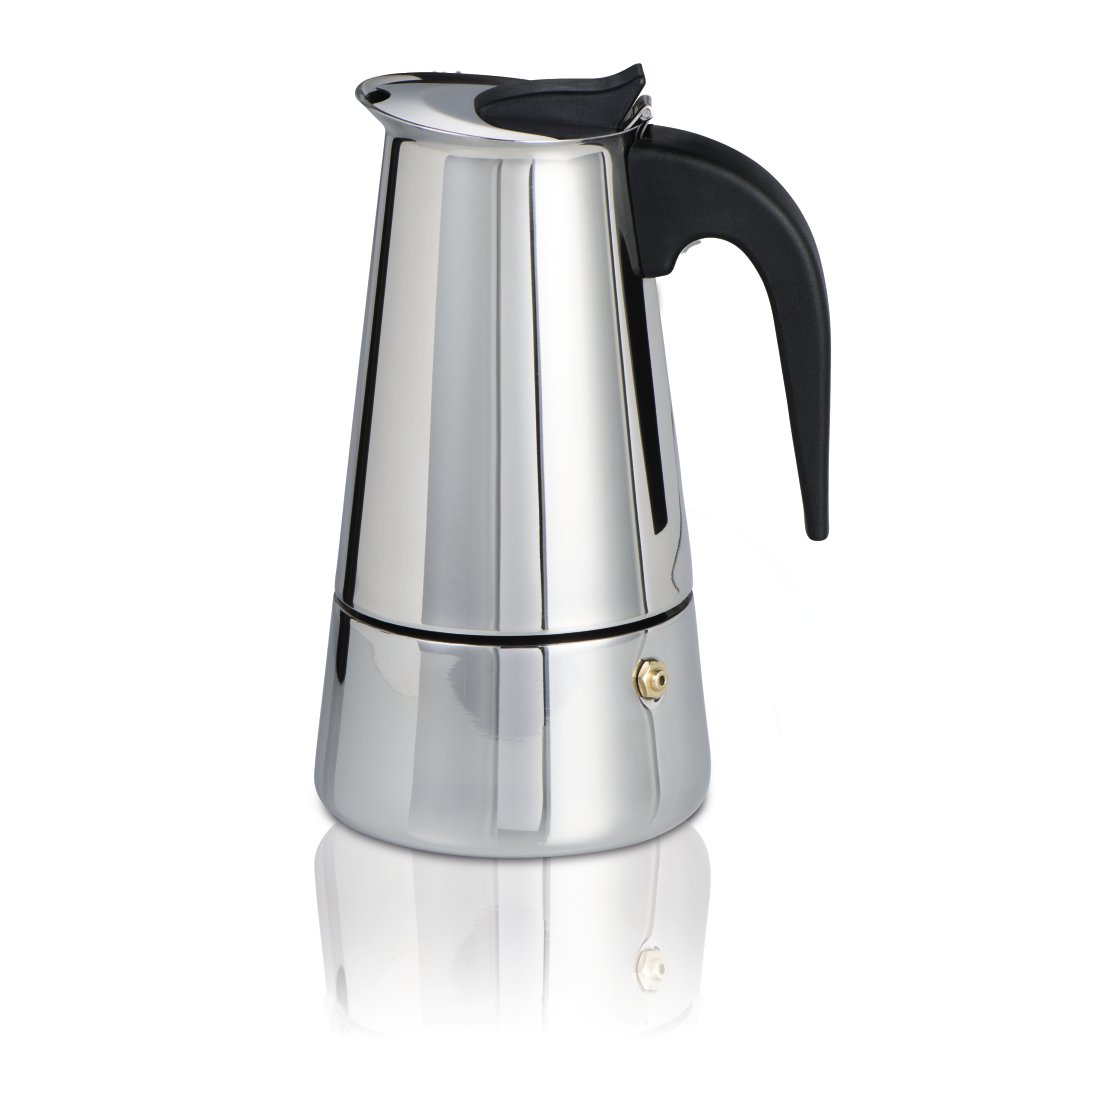 abx Druckfähige Abbildung - Xavax, Espressokocher aus Edelstahl, 250 ml, geeignet für Induktion